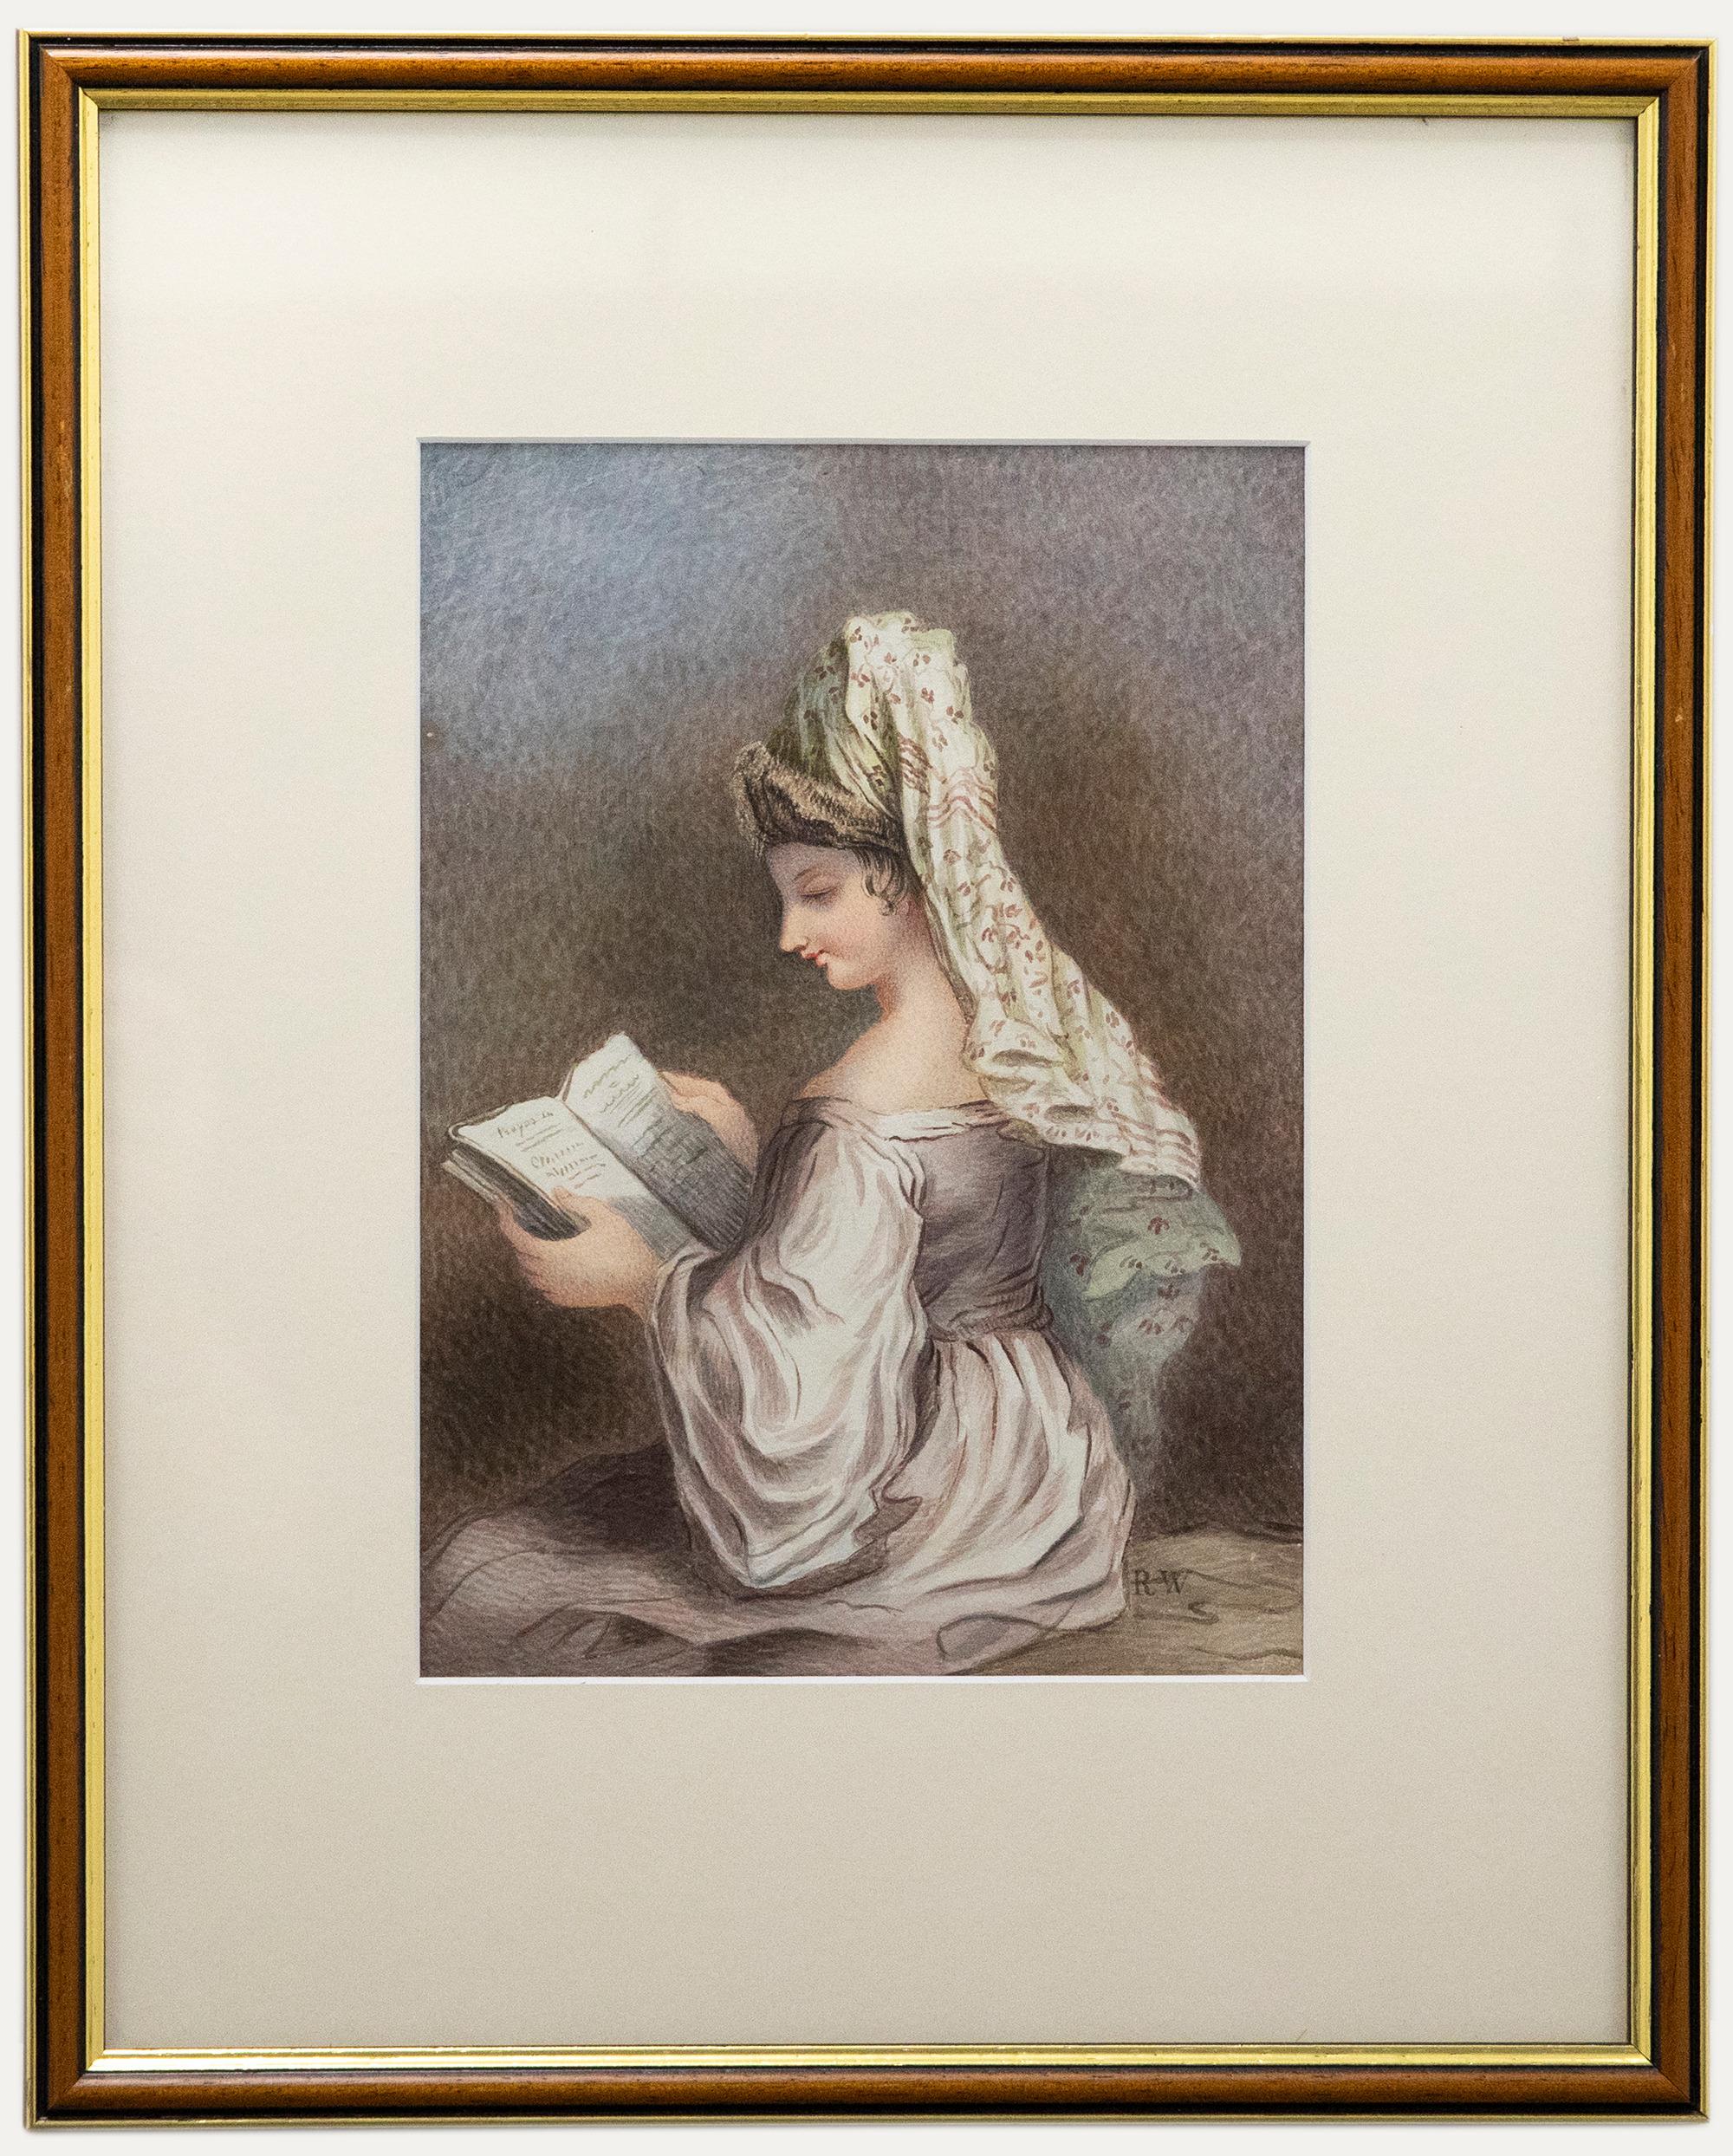 Eine gelungene Aquarellstudie, die eine Frau darstellt, die ein Gebetbuch liest. Die Künstlerin hat den kunstvollen Kopfschmuck und das Kleid der Frau detailgetreu festgehalten. Signiert mit dem Monogramm von Westal unten rechts. Präsentiert in